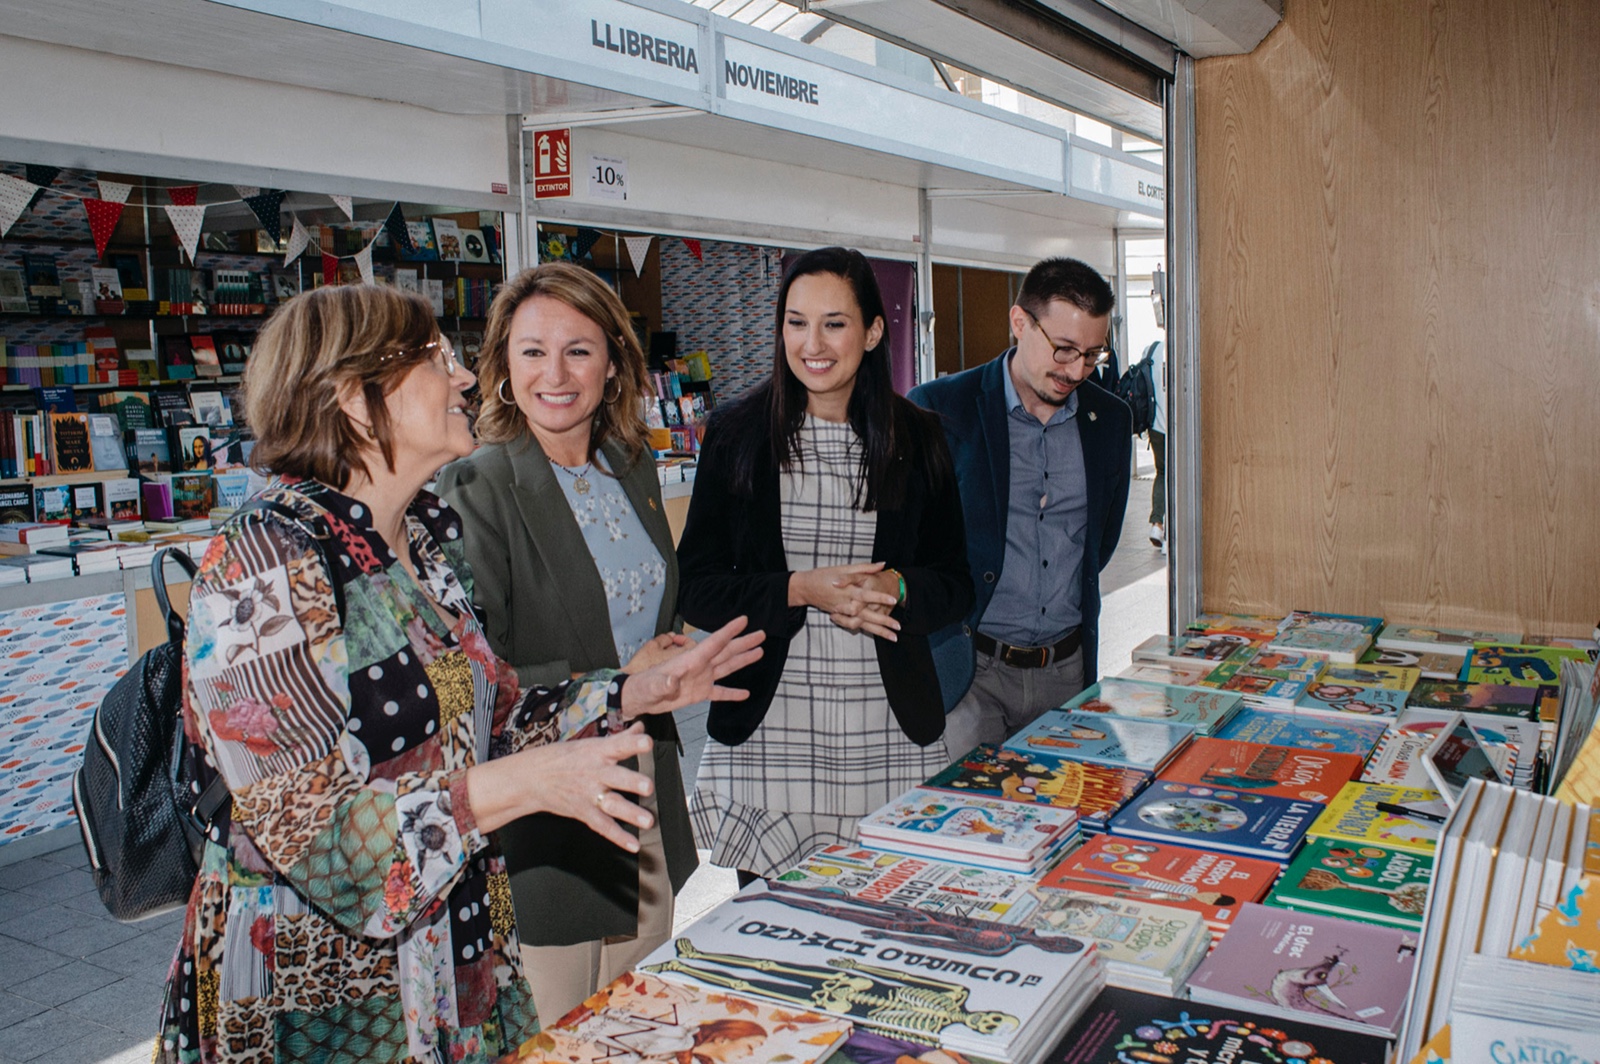 Begoña Carrasco: “La Feria del Libro regresa a su espacio tradicional y emblemático, la plaza Santa Clara, dentro de nuestra estrategia de ciudad viva y de que Castellón respire cultura”